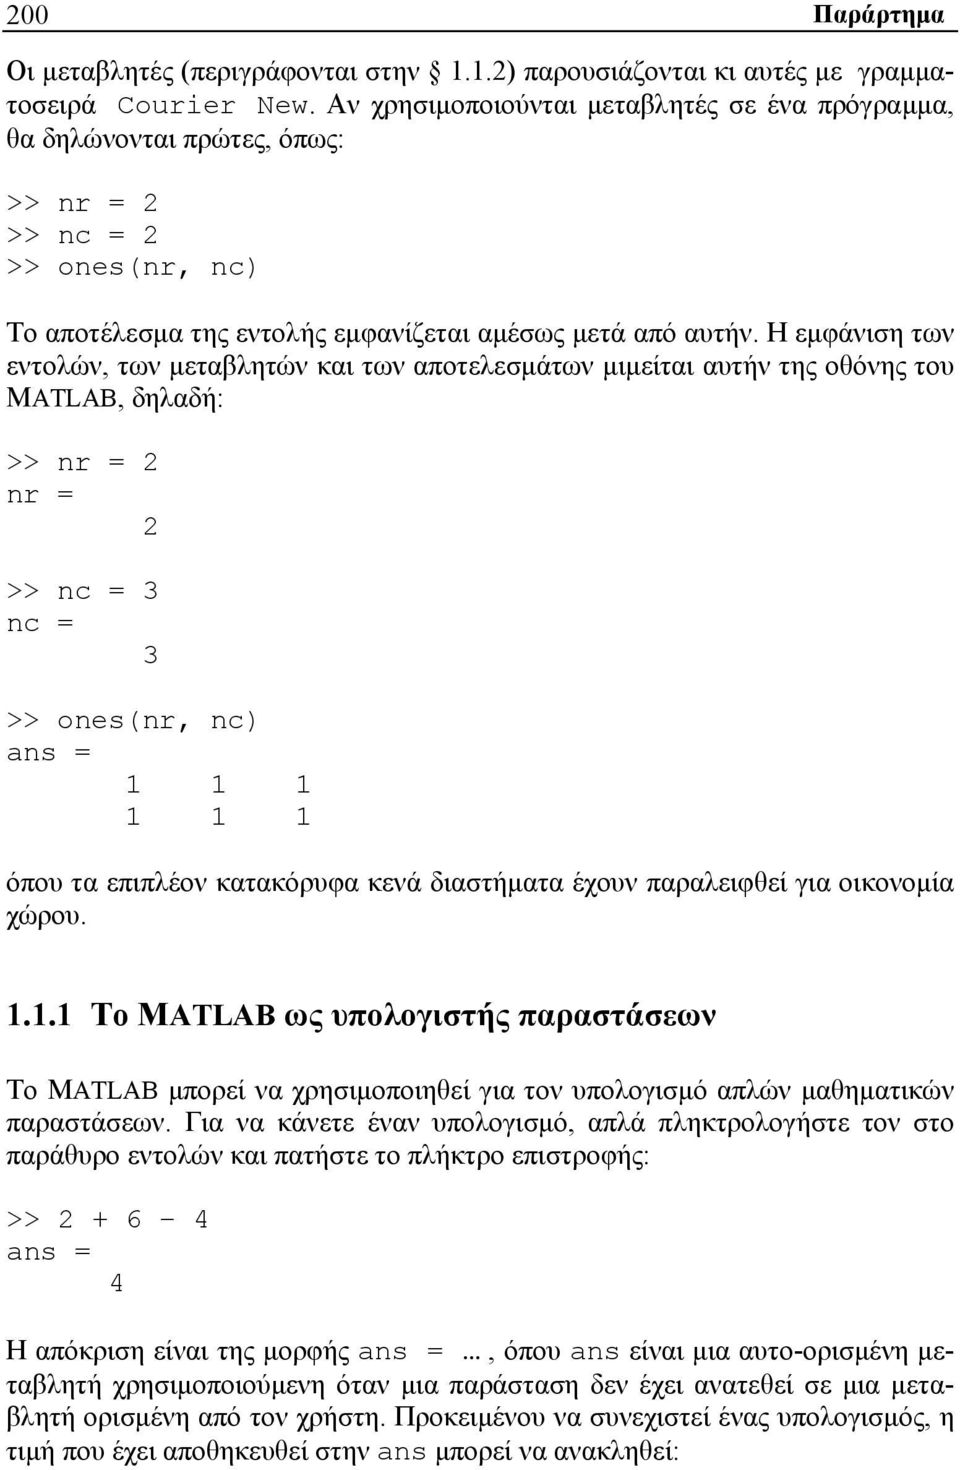 Η εμφάνιση των εντολών, των μεταβλητών και των αποτελεσμάτων μιμείται αυτήν της οθόνης του MATLAB, δηλαδή: >> nr = 2 nr = 2 >> nc = 3 nc = 3 >> ones(nr, nc) ans = 1 1 1 1 1 1 όπου τα επιπλέον